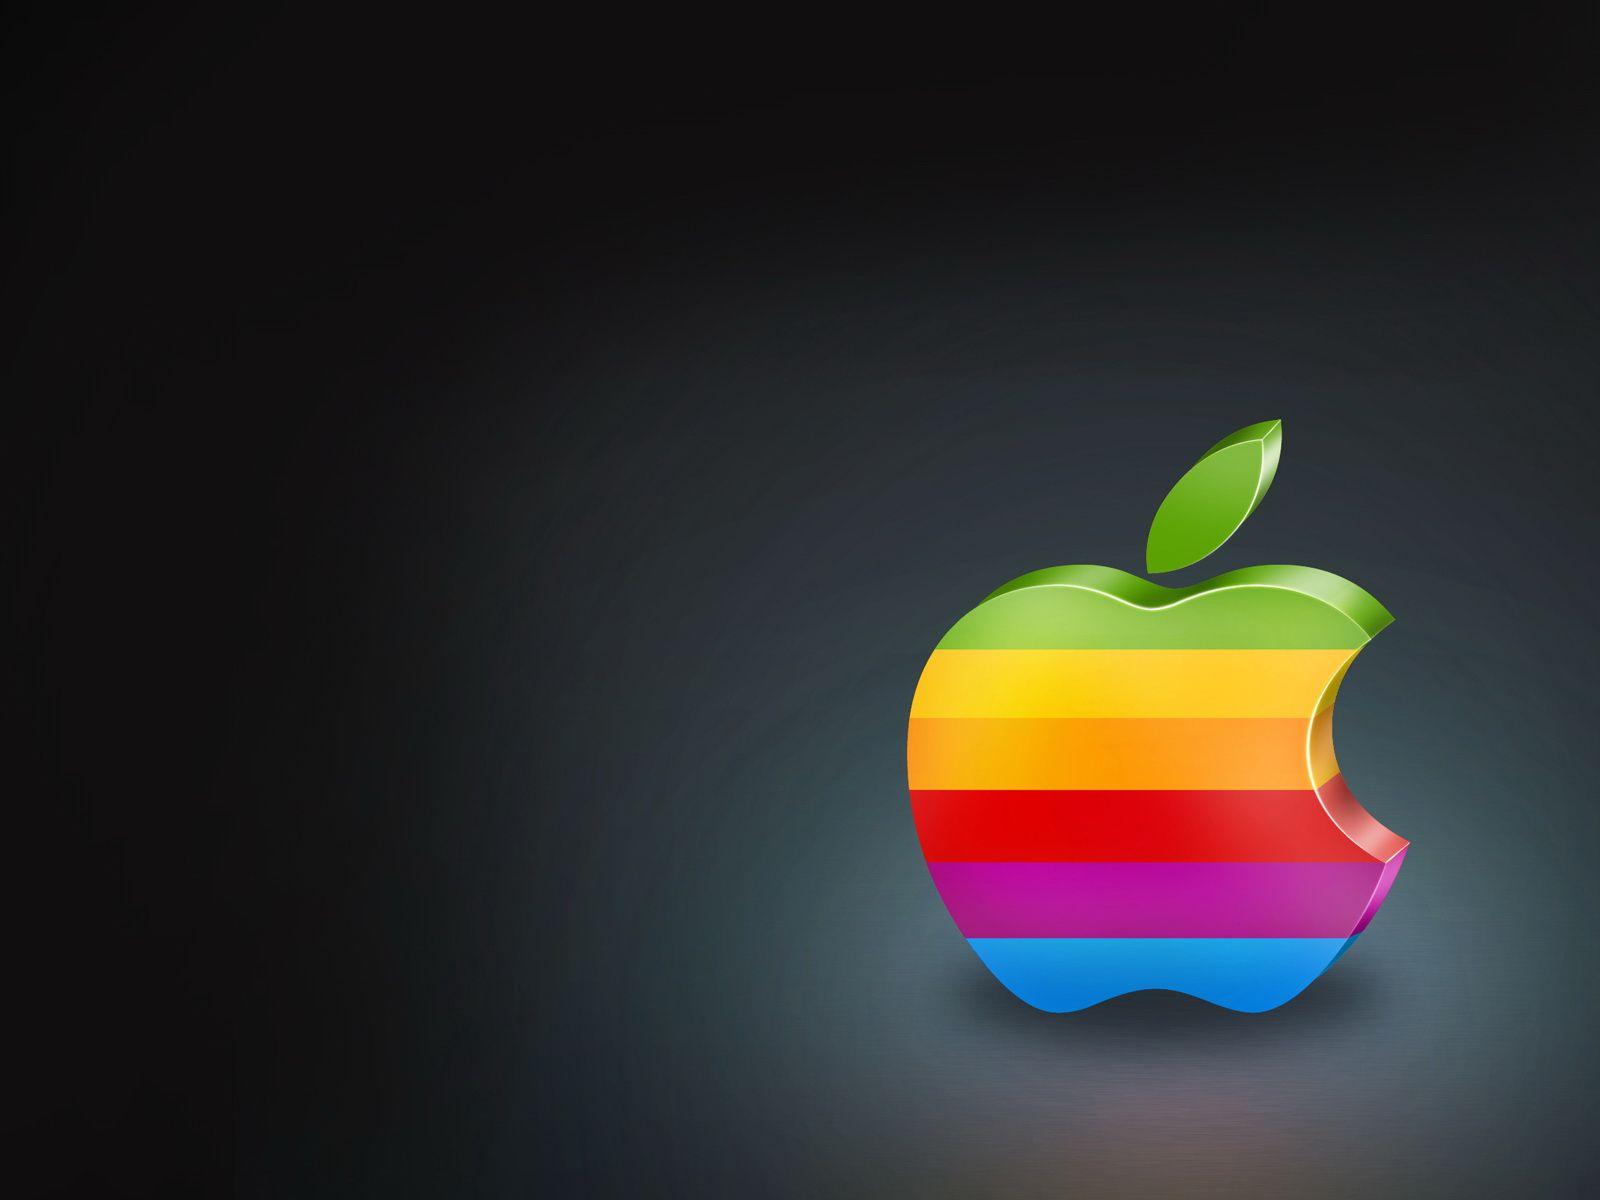 Shining Glassy Apple logo # 1920x1200. All For Desktop